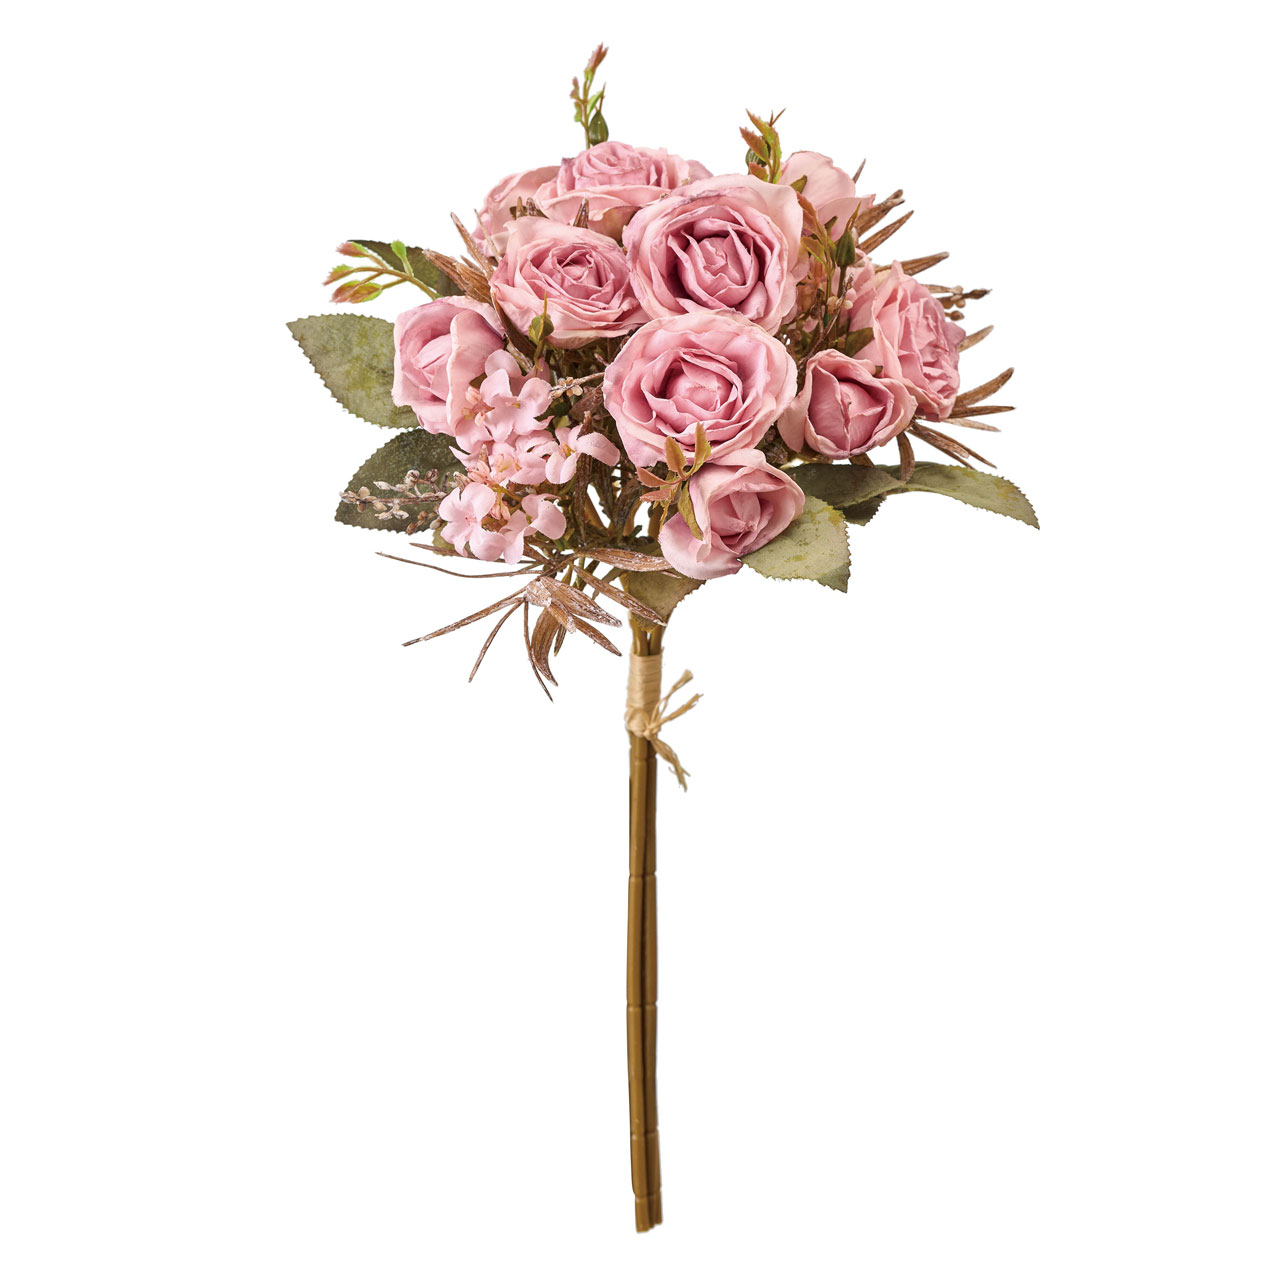 マイフラ】 通販/MAGIQ セシルローズブーケ アンティークピンク アーティフィシャルフラワー 造花 ローズ バラ  FM000616-002(アンティークピンク): MAGIQ(アーティフィシャルフラワー 造花)/全国にMAGIQ、花器、花資材などをお届けします。